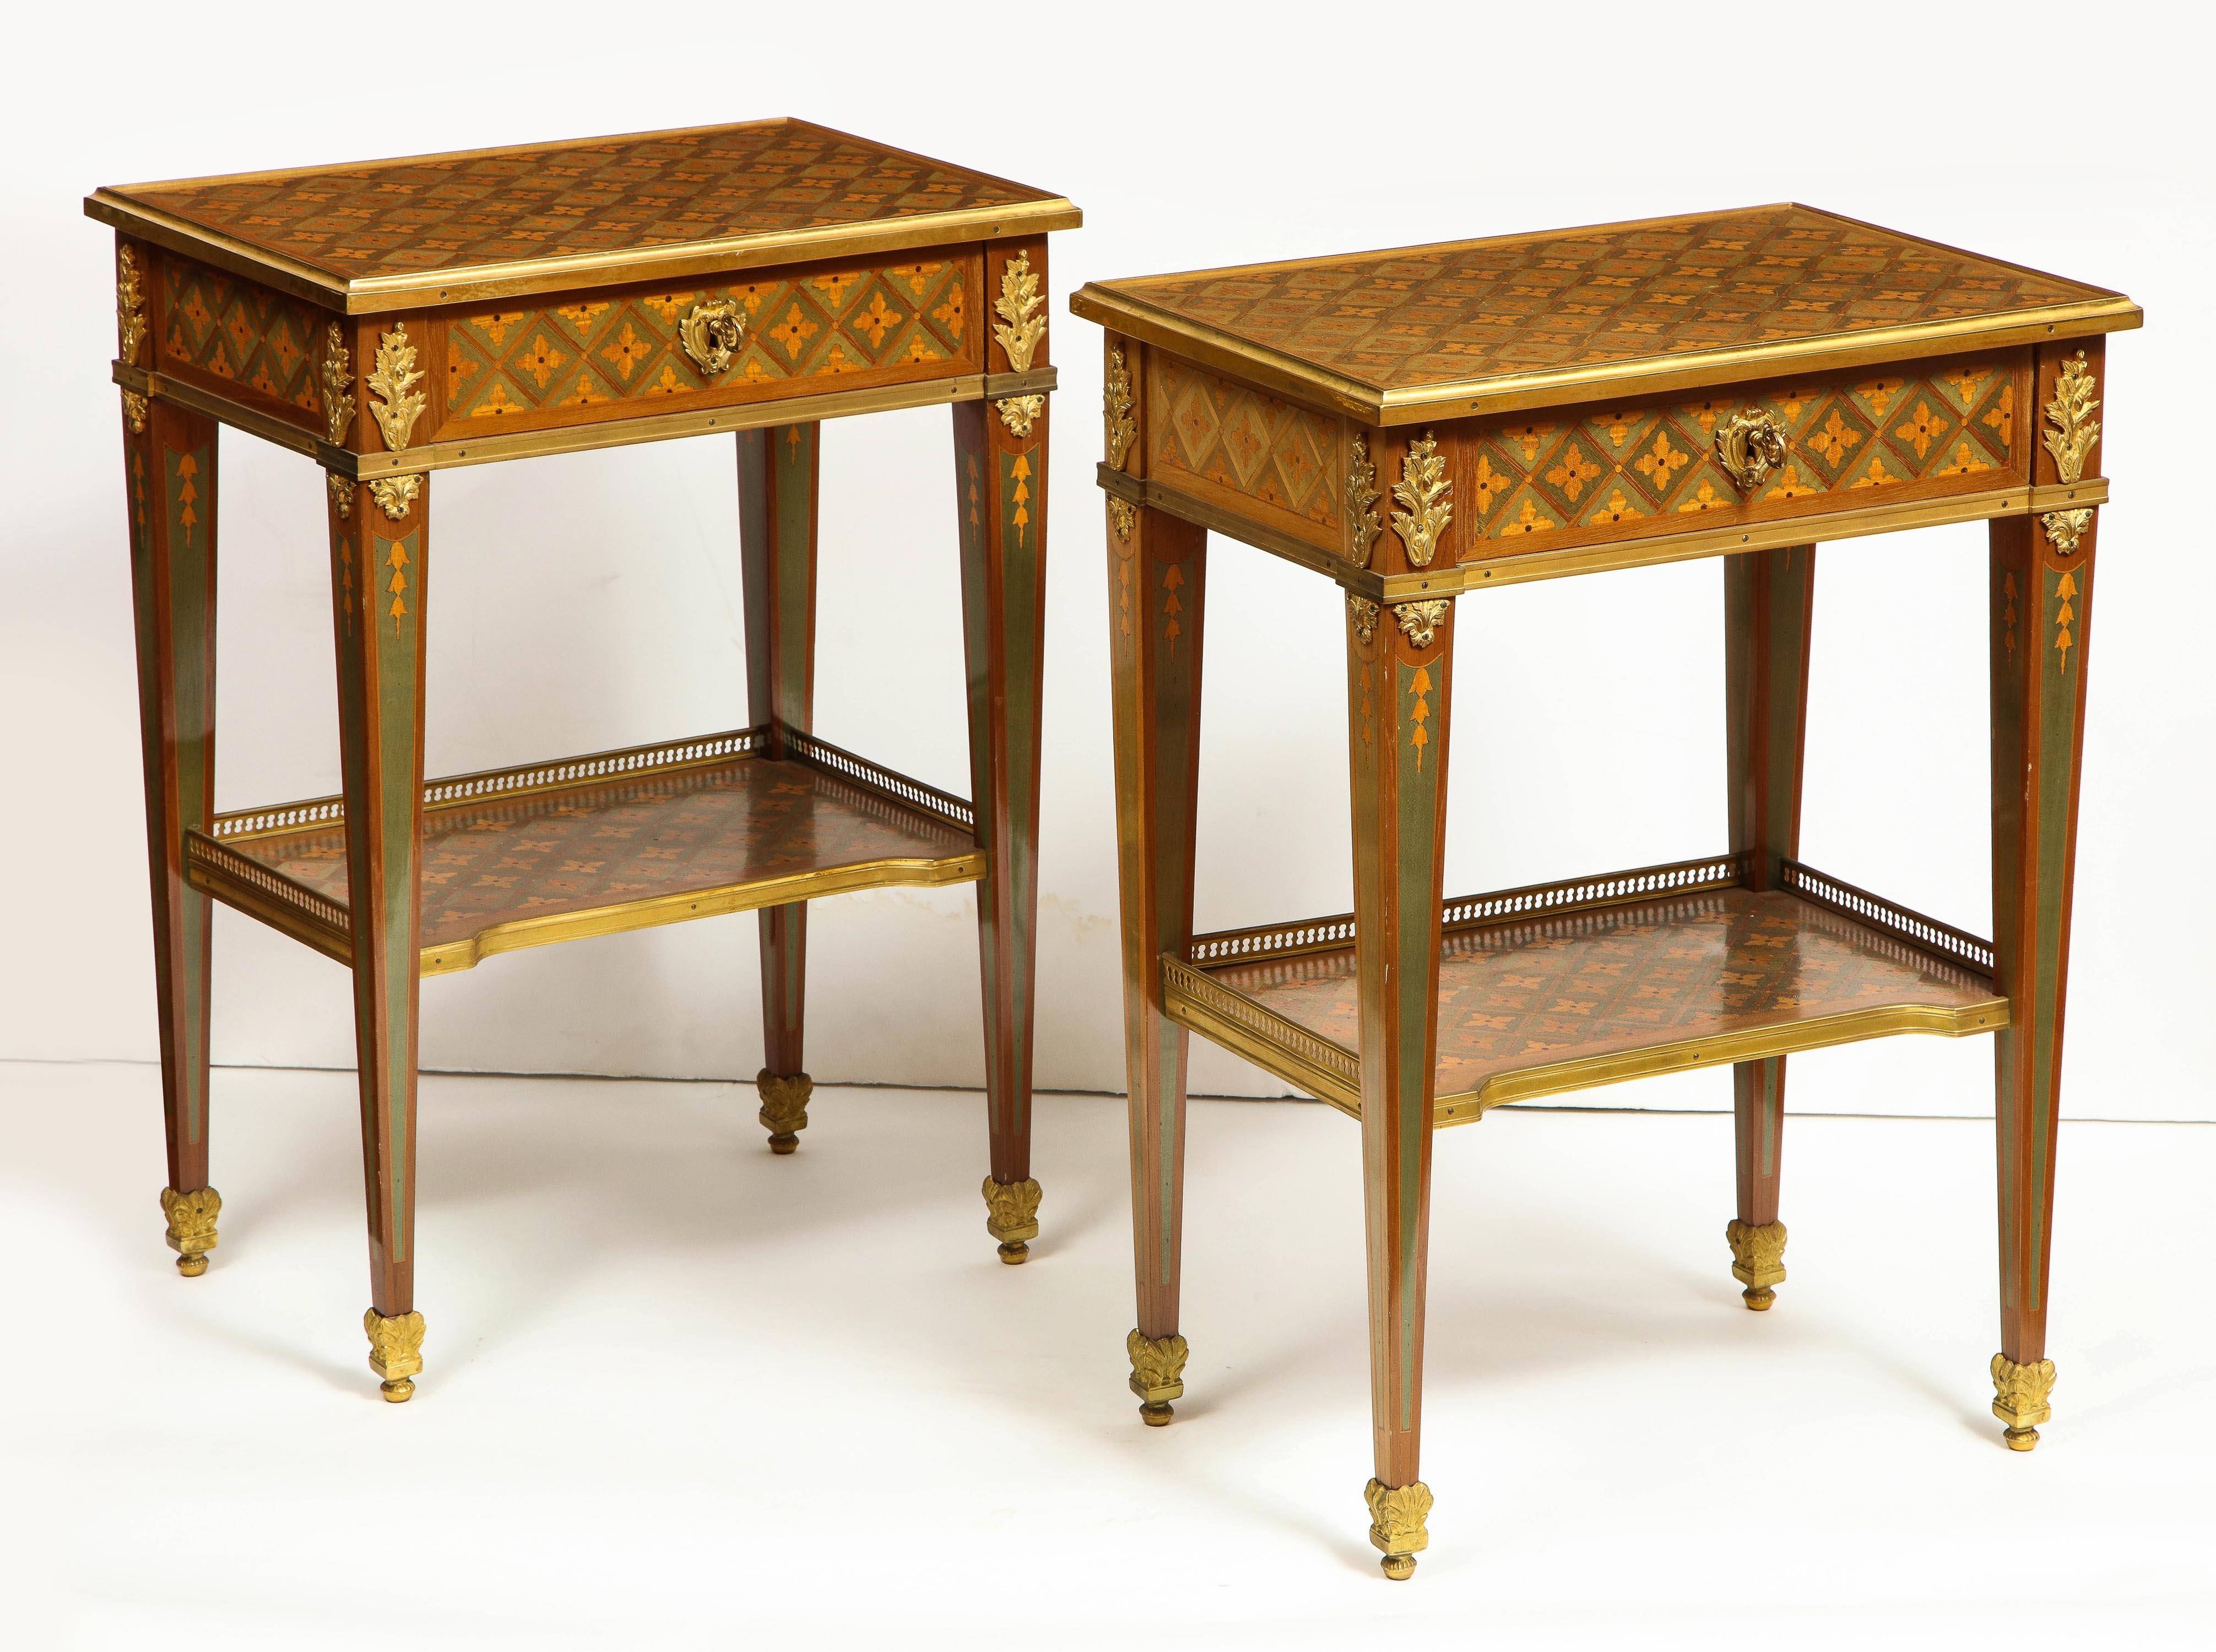 Ein außergewöhnliches Paar französischer Beistelltische im Louis-XVI-Stil mit Ormolu-Montierung und Intarsien, spätes 19. - frühes 20. Jahrhundert, in der Art von RVLC.

Diese Tische sind wirklich außergewöhnlich und reine Beispiele für